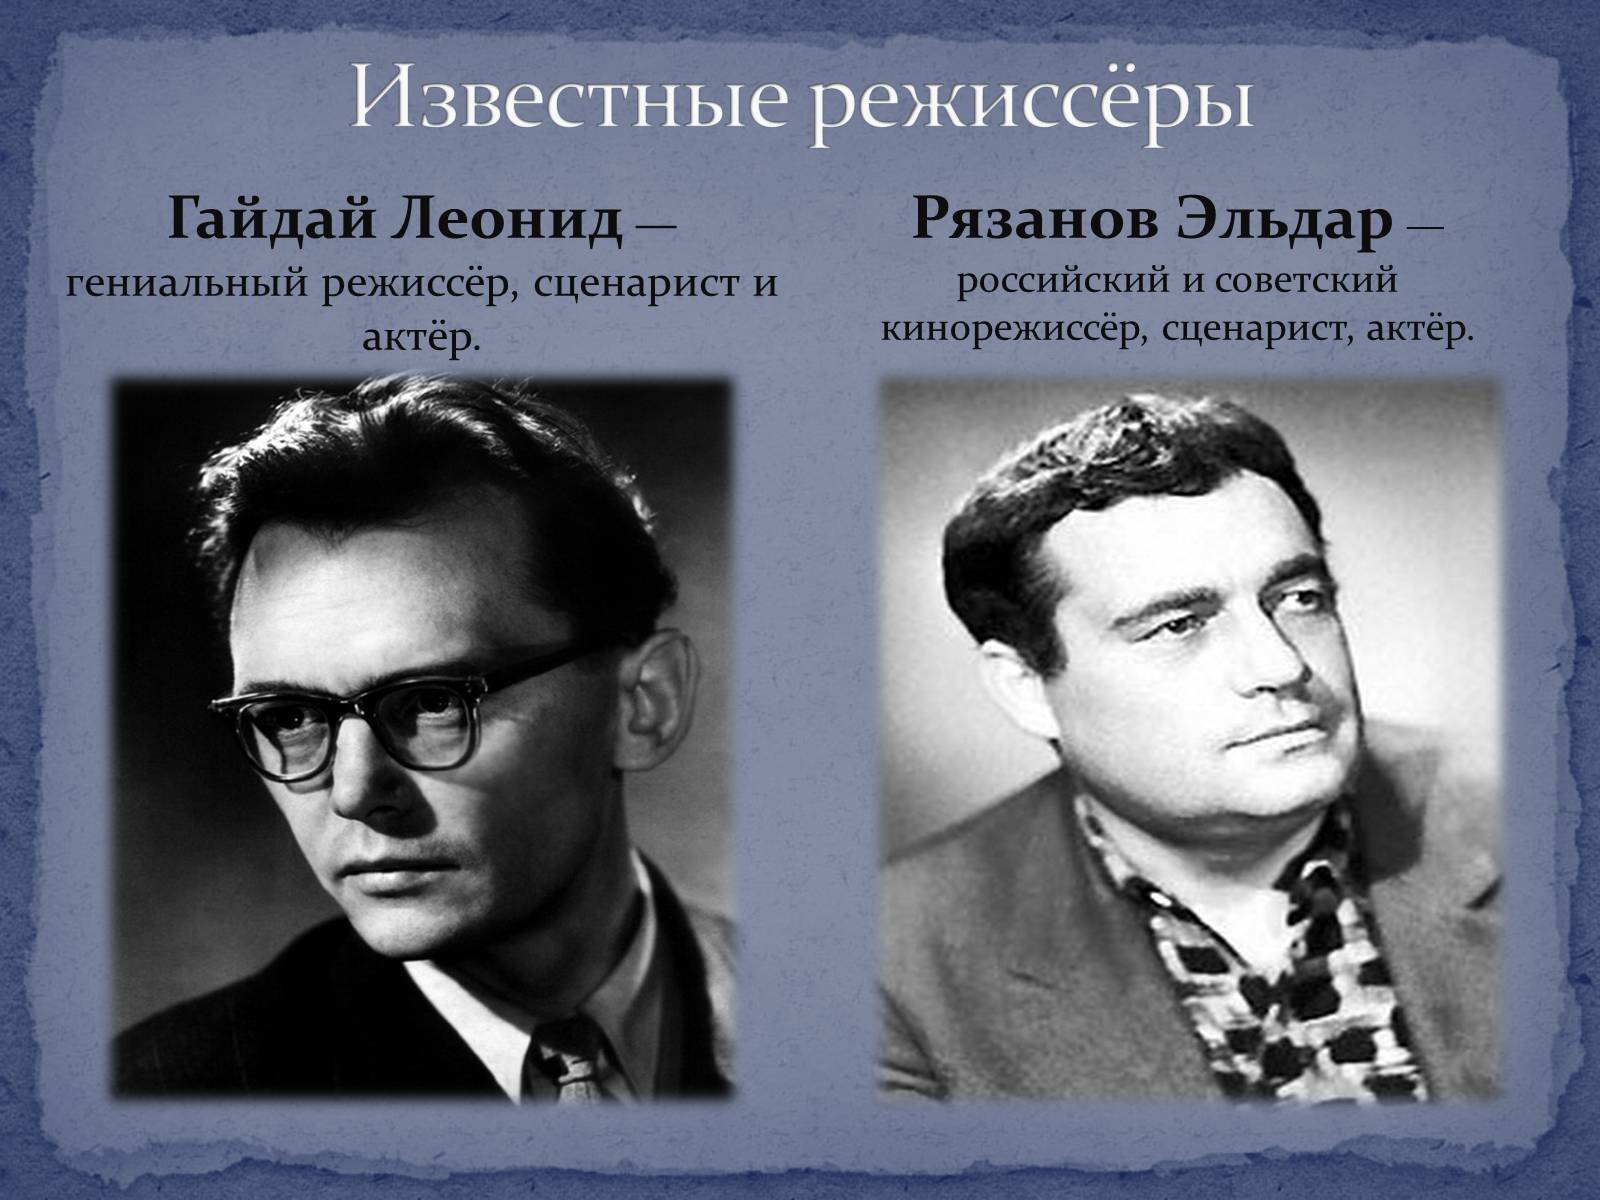 Советские режиссеры список с фото